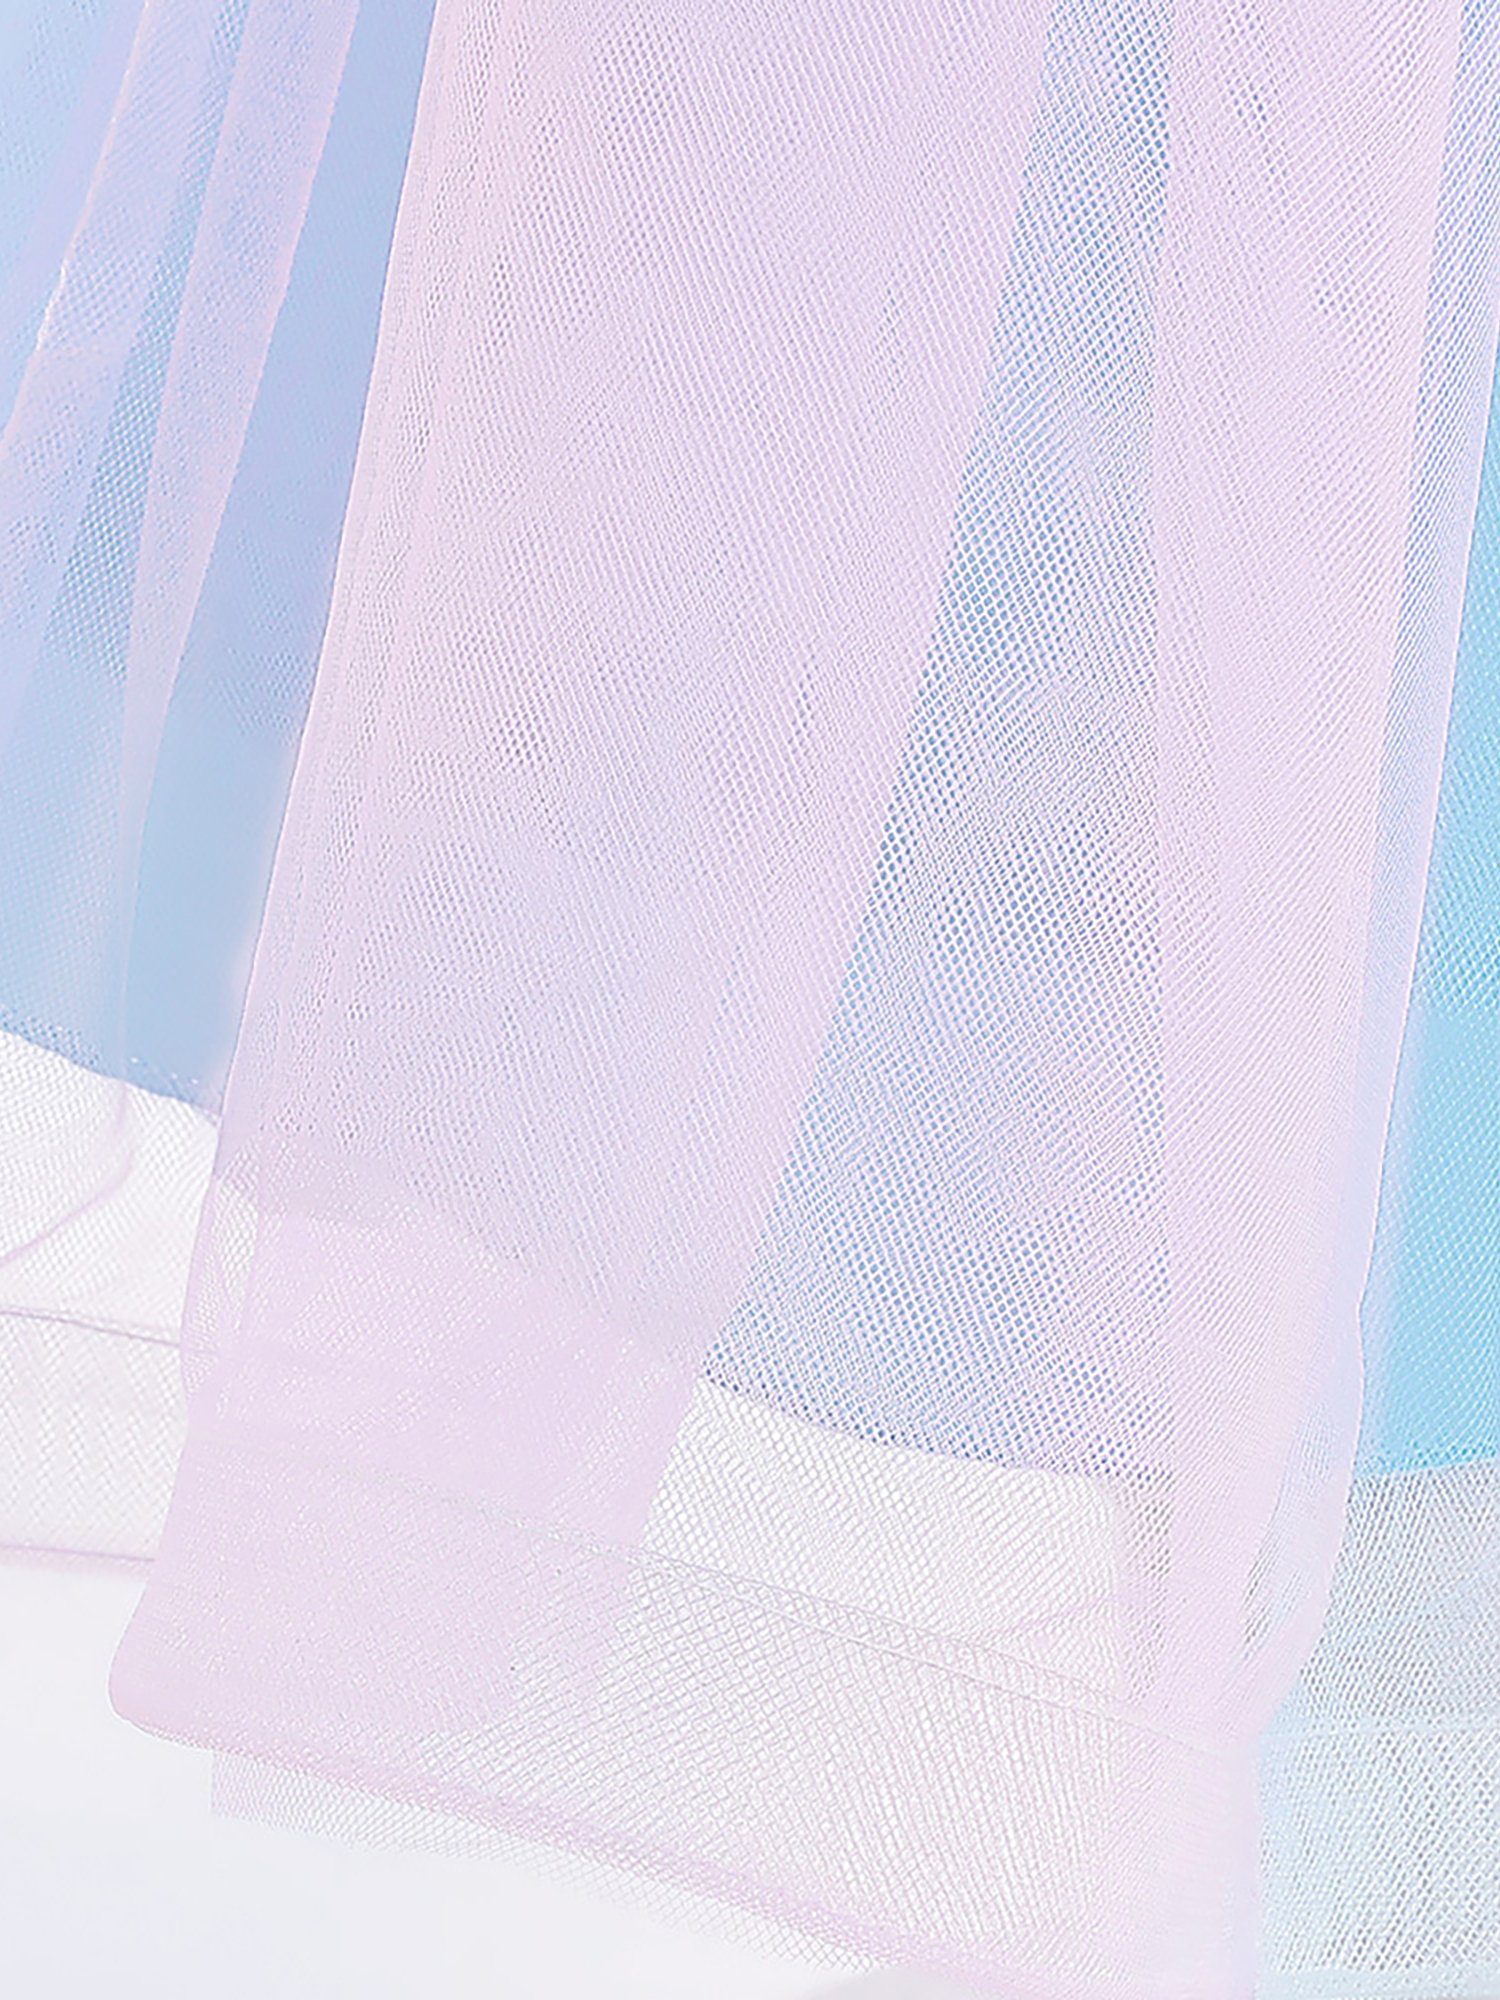 aus Tüll Mädchen LAPA dreidimensionalen Abendkleid mit Netzblumen Prinzessinnenkleid Blau